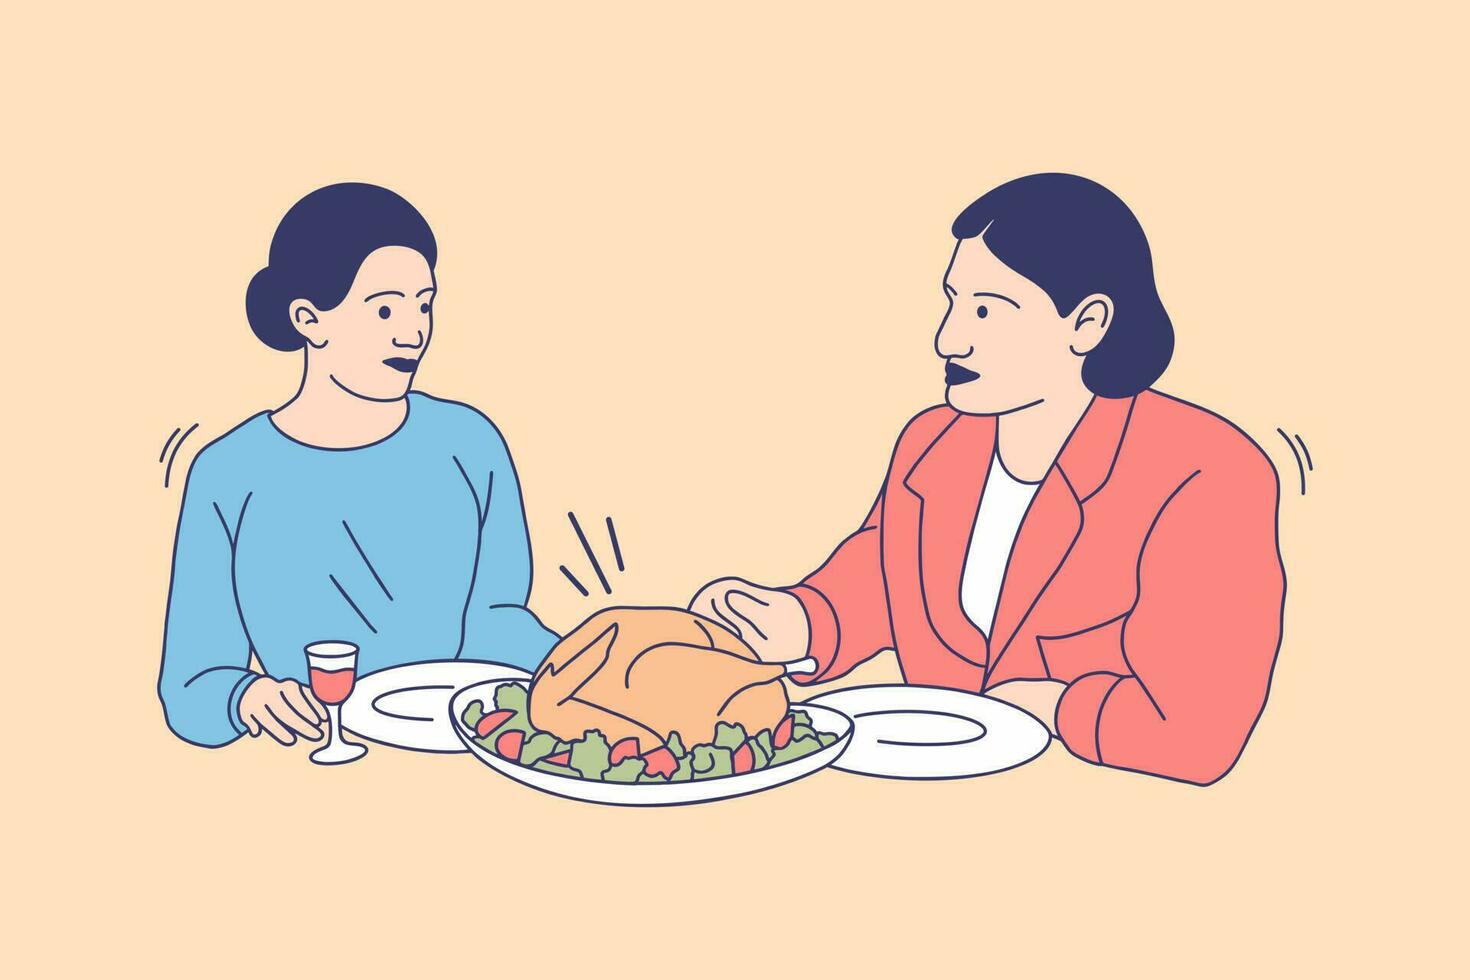 ilustrações de família feliz comem peru para o conceito de design do dia de ação de graças vetor